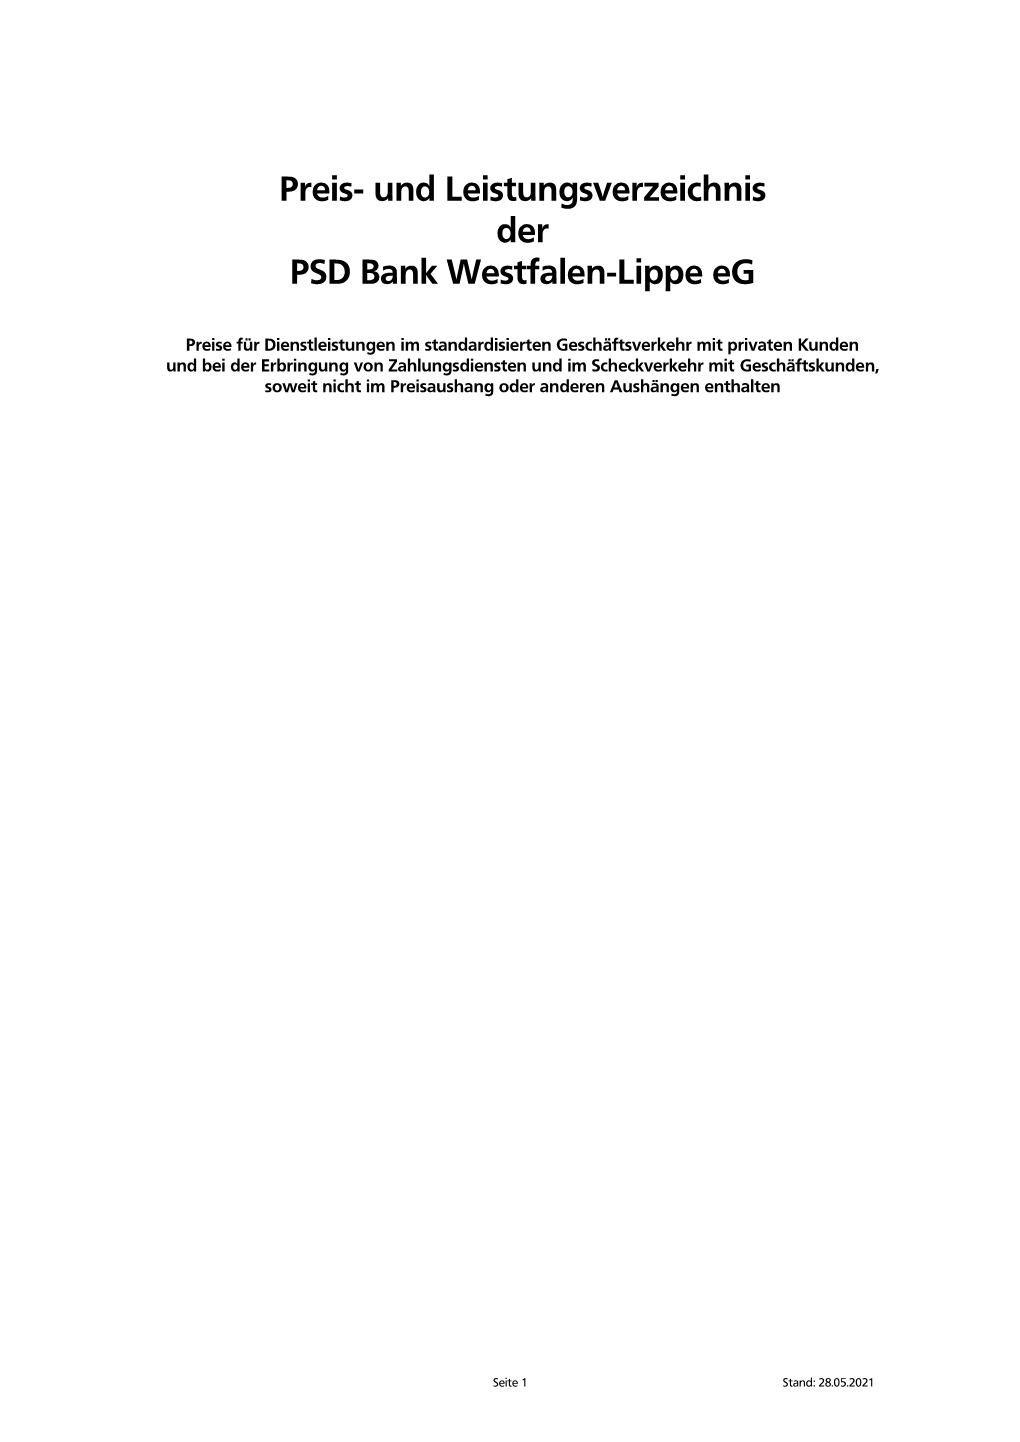 Preis- Und Leistungsverzeichnis Der PSD Bank Westfalen-Lippe Eg